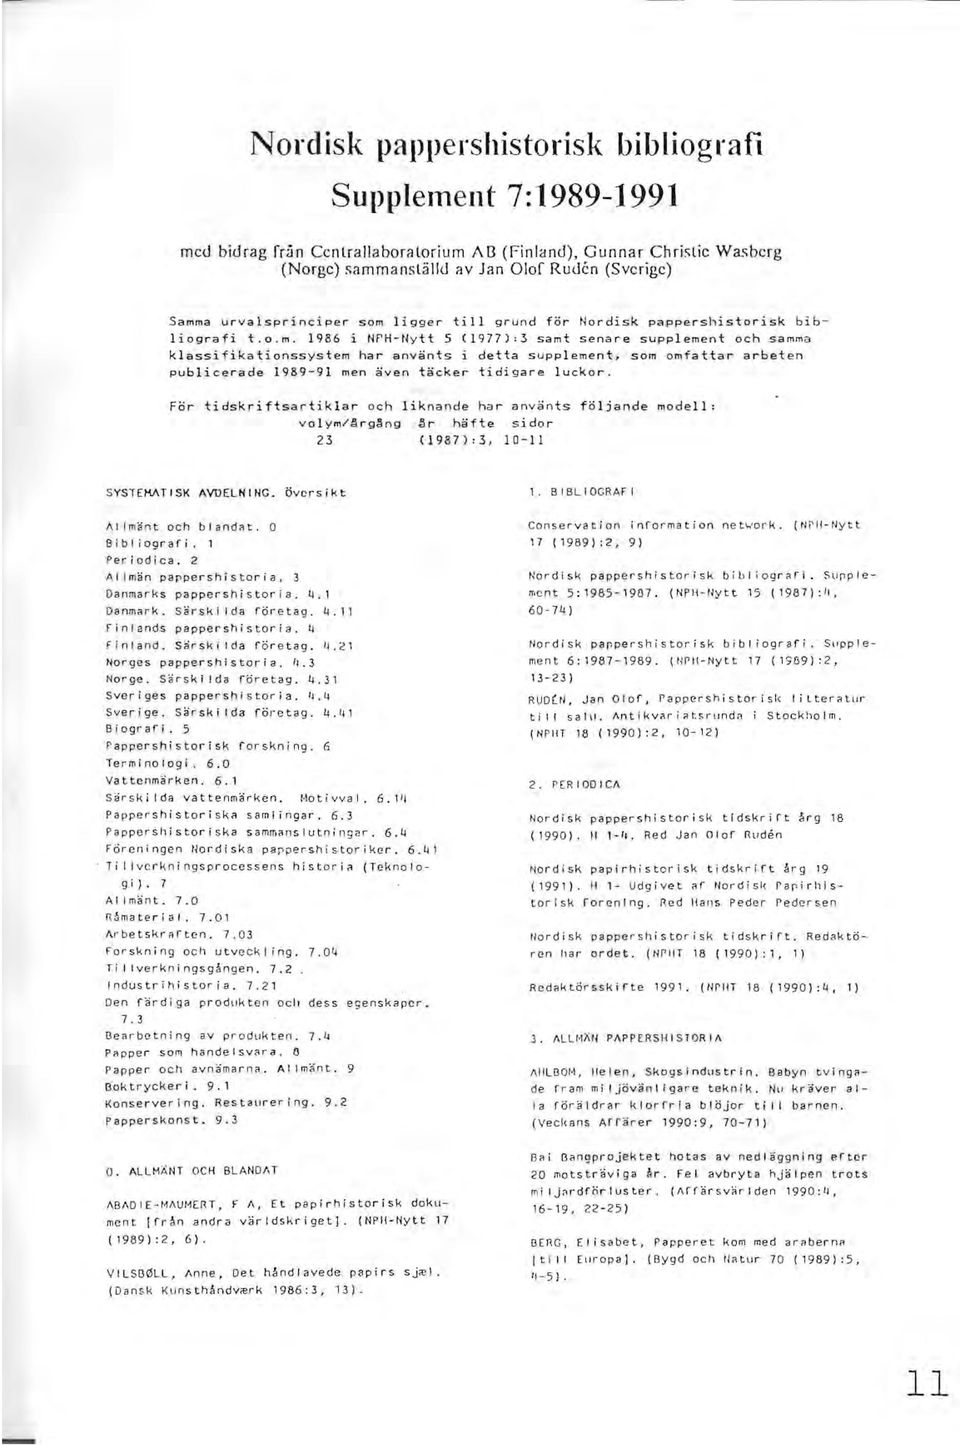 1986 i NPH-Nytt 5 (1977):3 samt senare supplement och samma klassifikationssystem har använts i detta supplement, som omfattar arbeten publicerade 1989-91 men även täcker tidigare luckor.